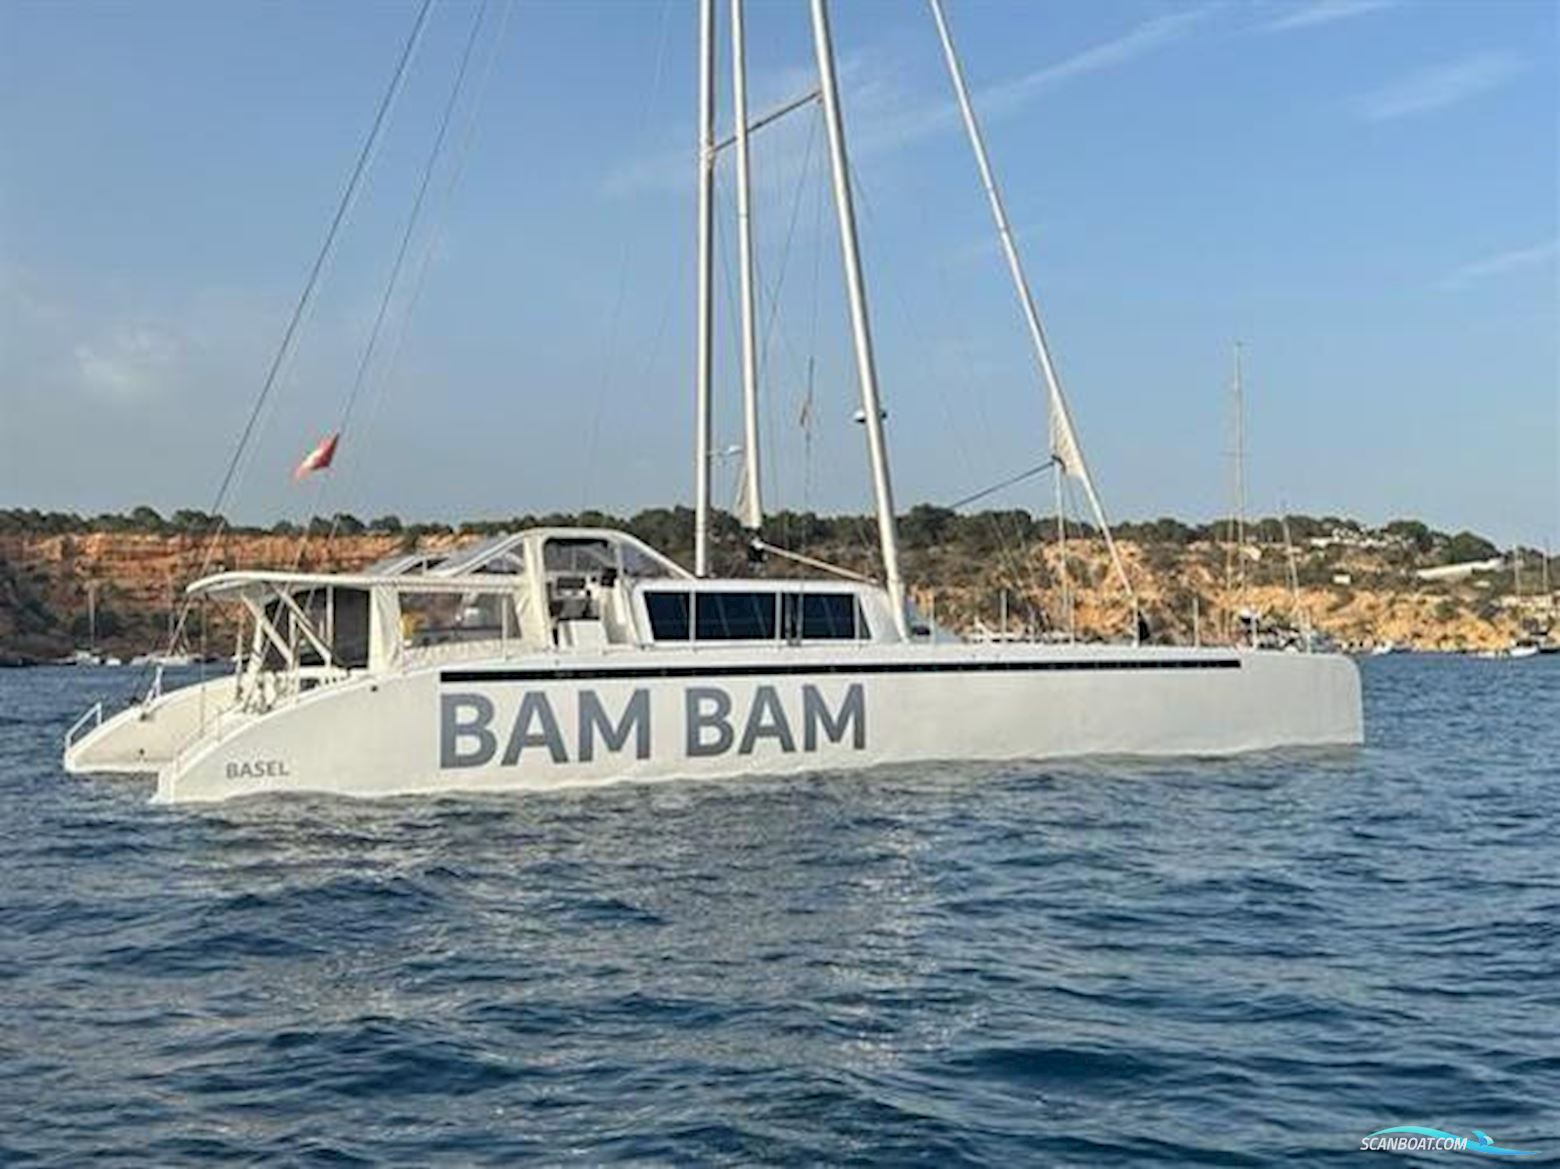 22m Catamaran Sailing boat 2023, Spain